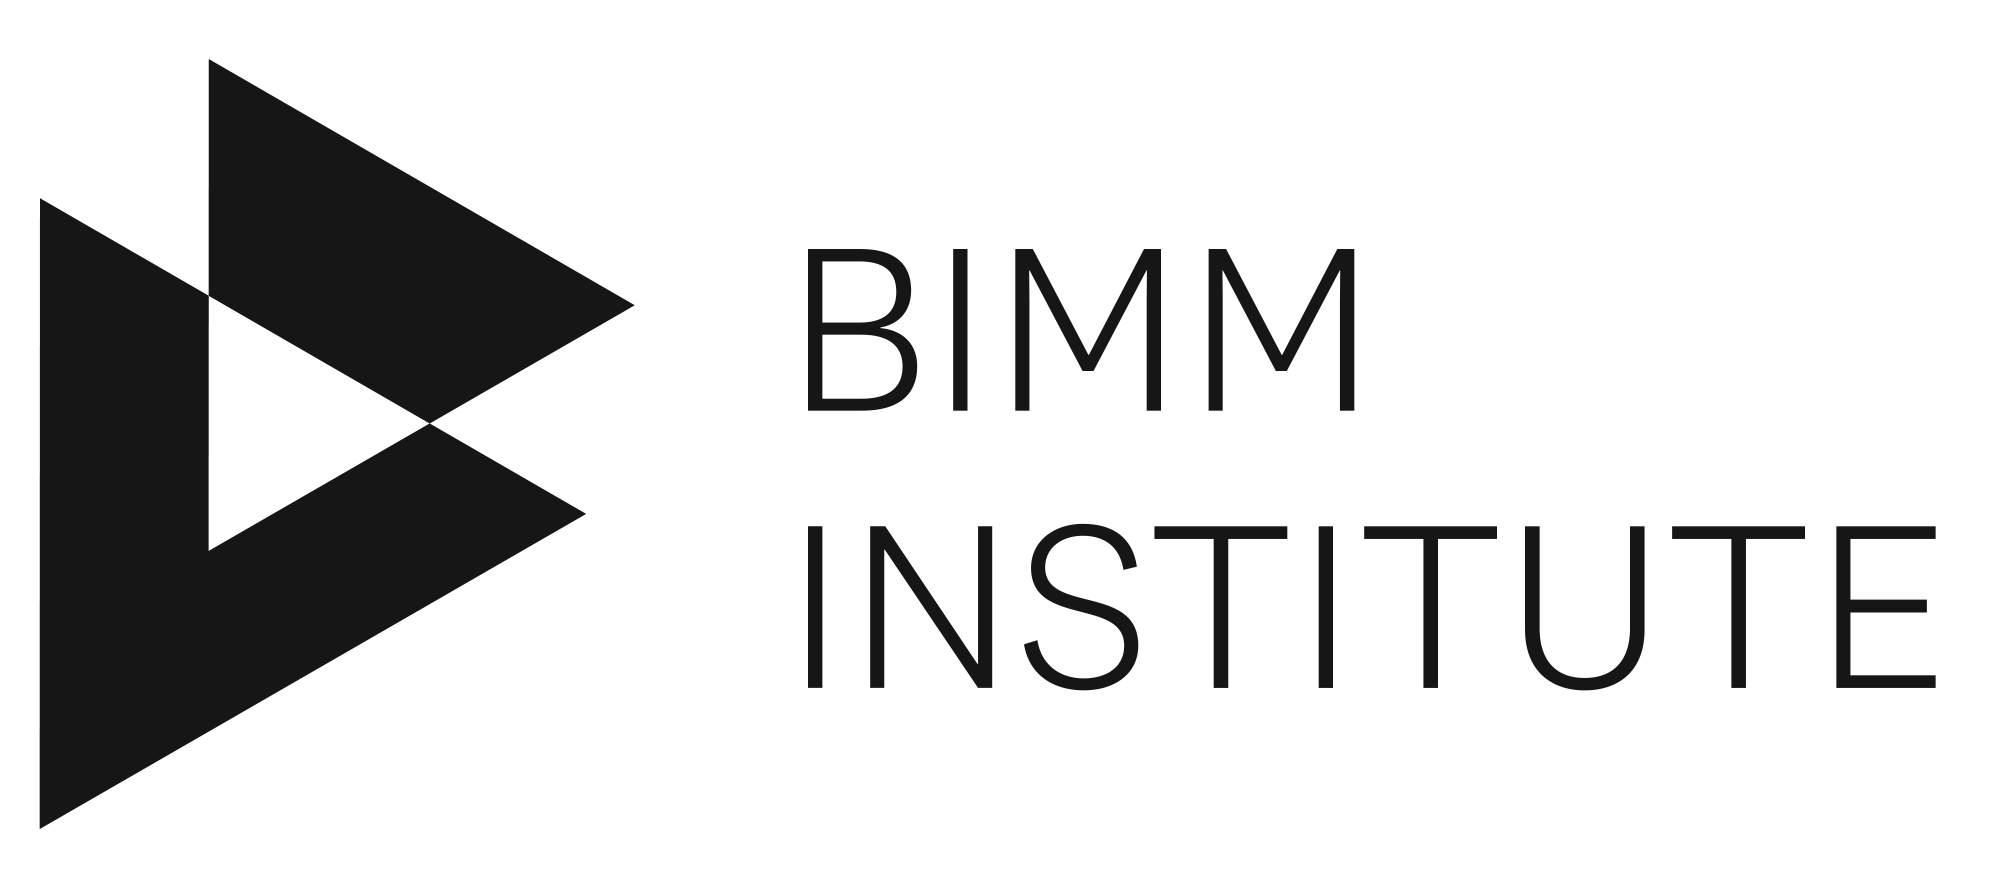 BIMM Institute logo